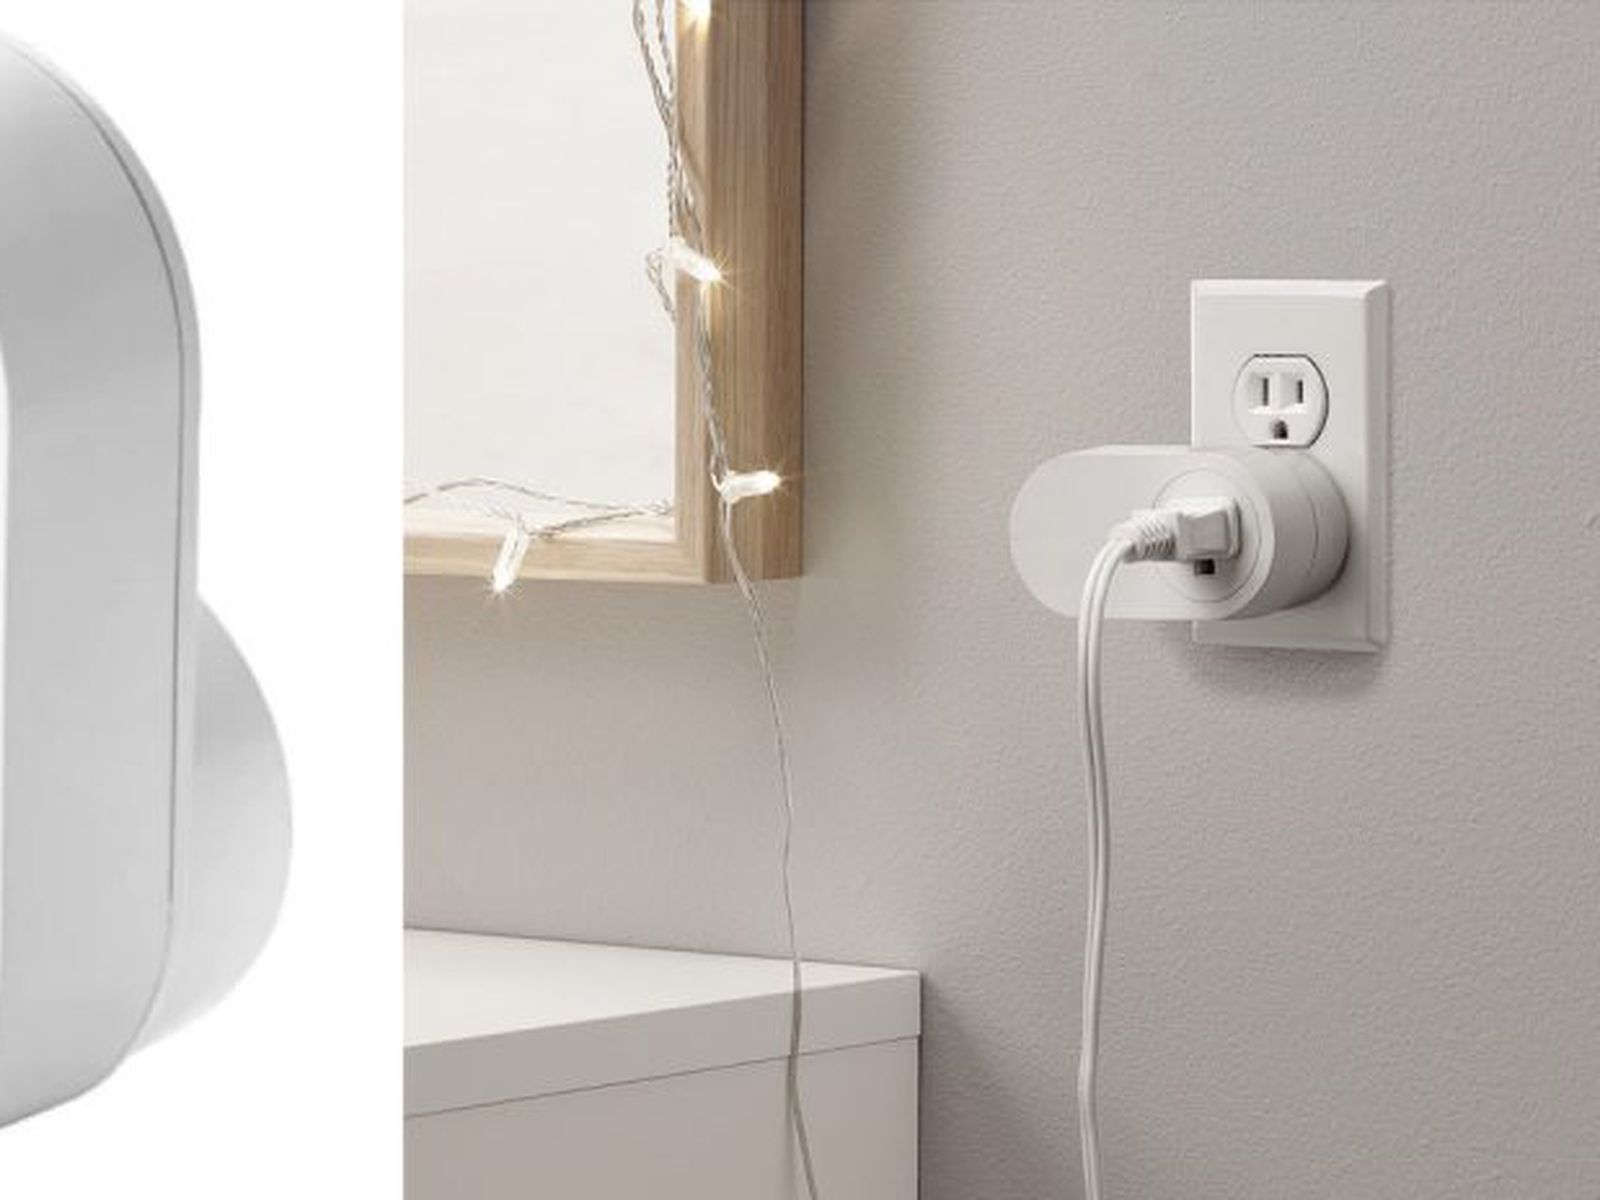 announces $25 smart plug that lets you control appliances